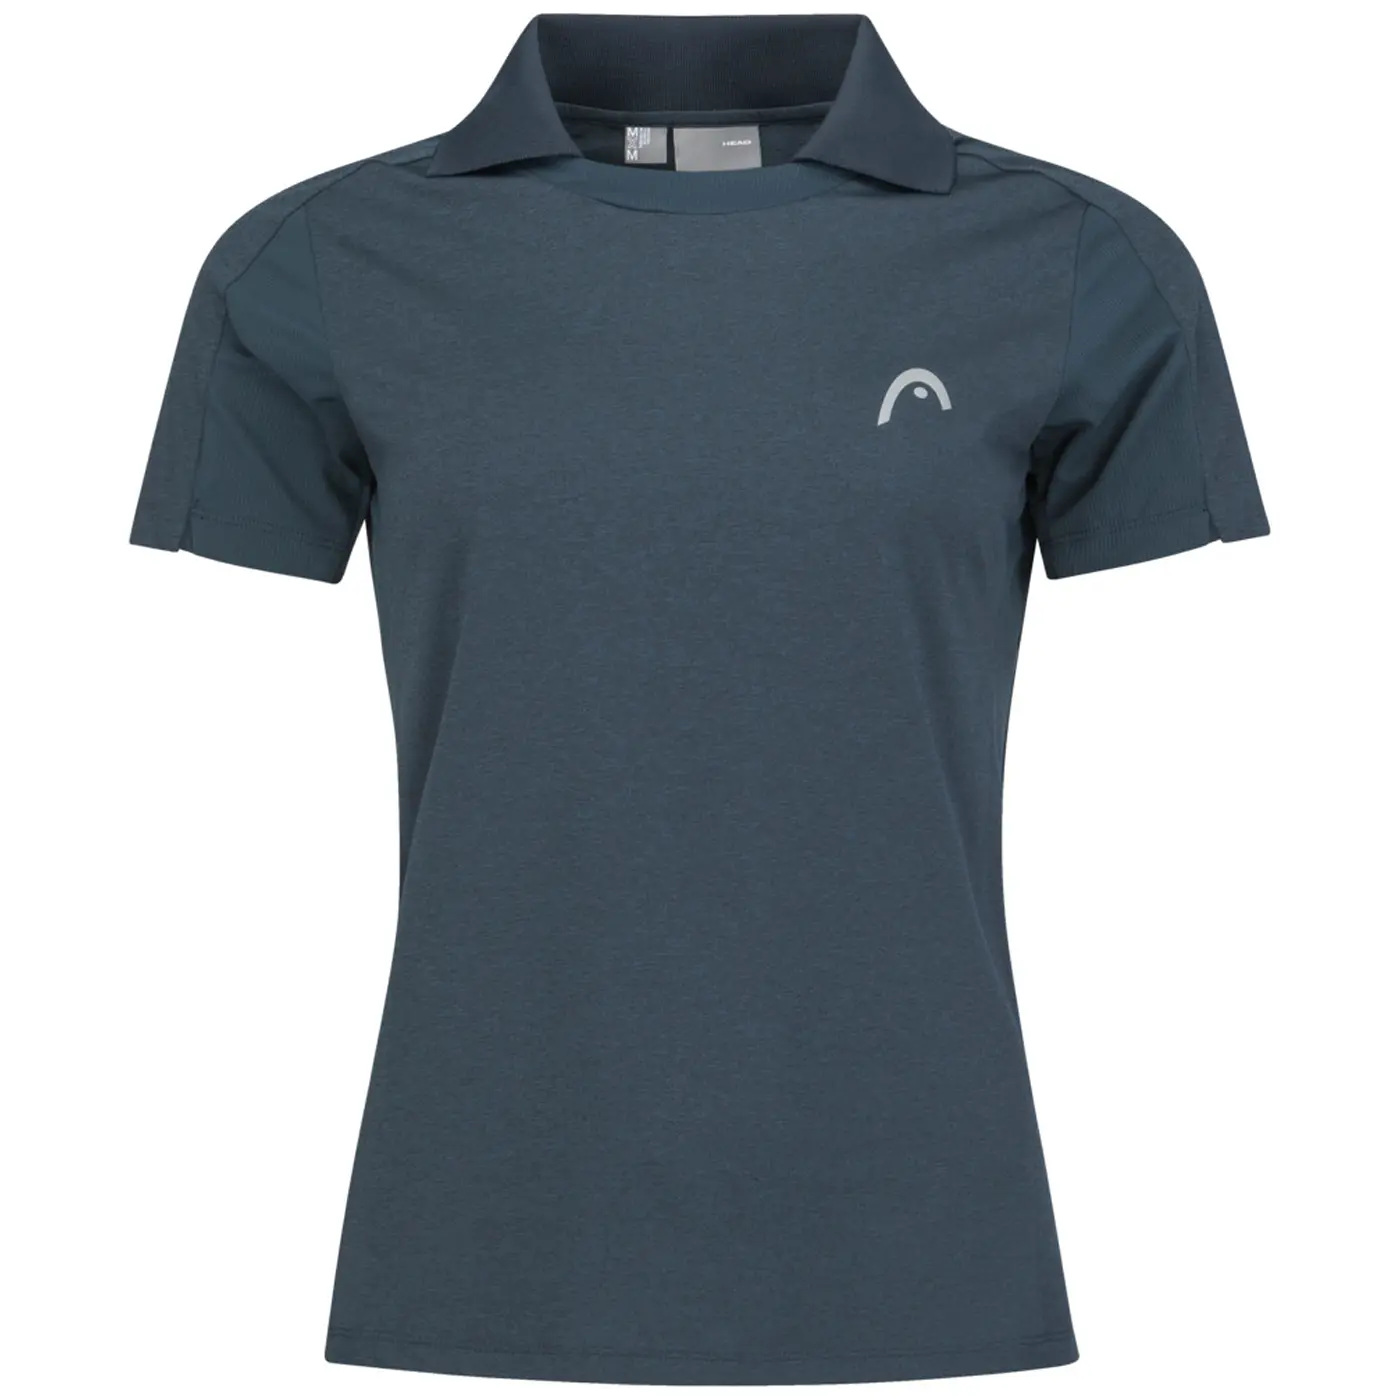 Head Women's Padel Tech Polo Shirt Navy Image 1